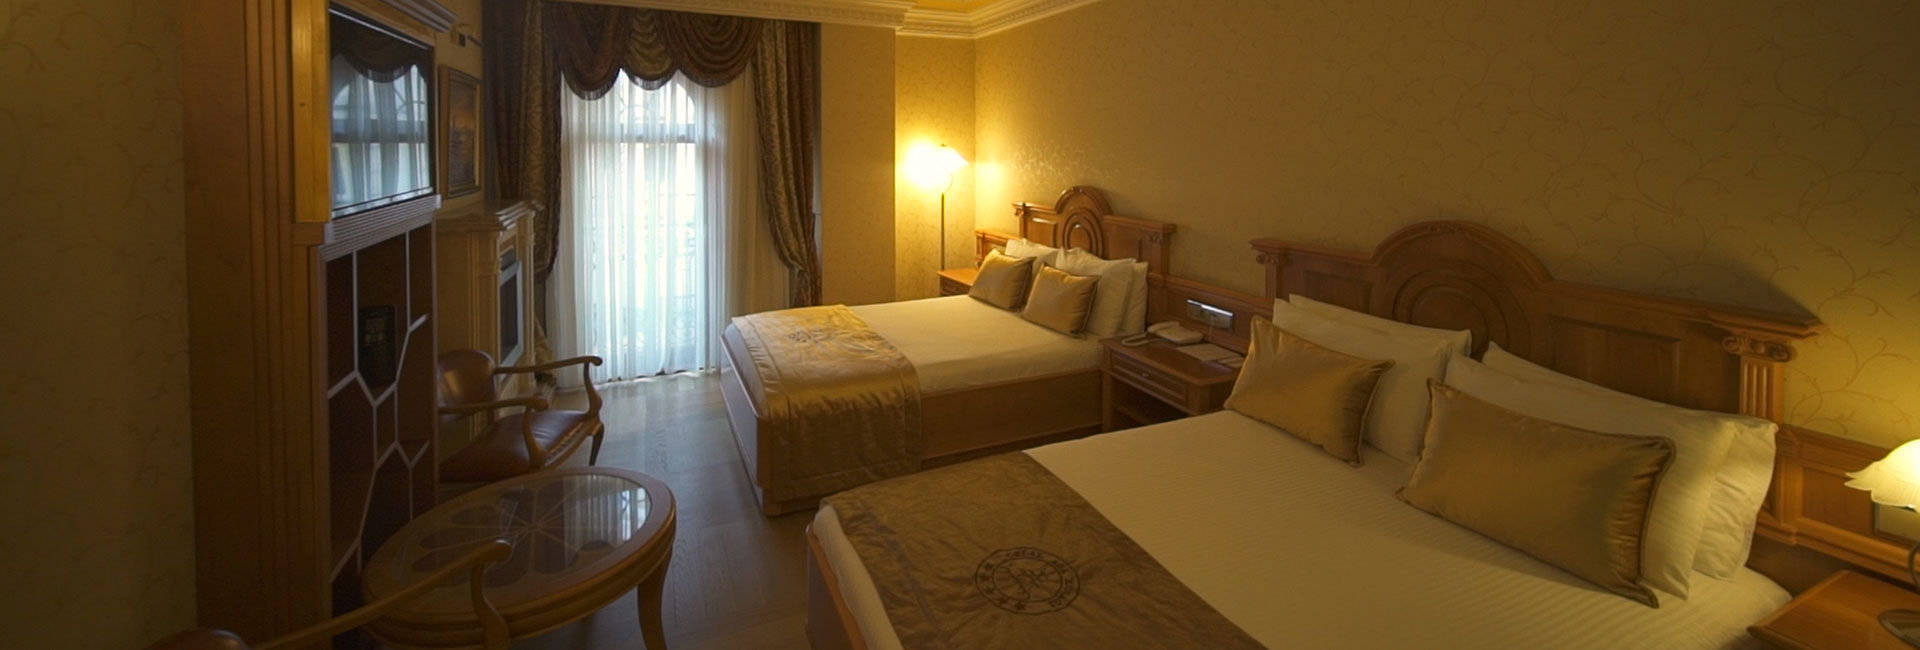 Hotel Image 22